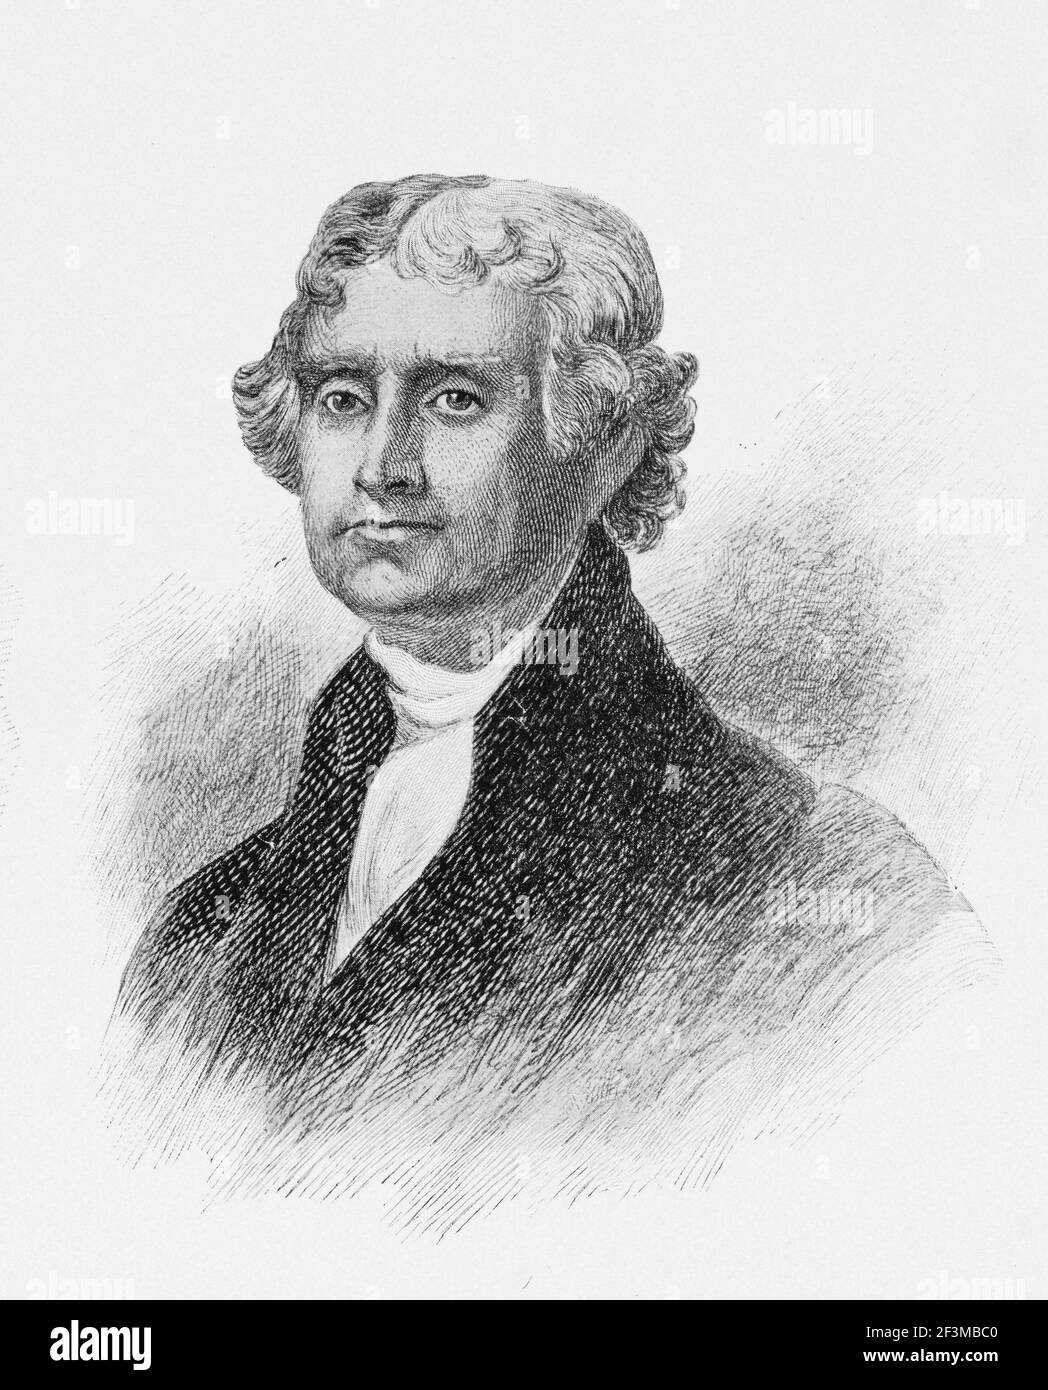 Portrait du président Thomas Jefferson. Thomas Jefferson (1743 – 1826) était un homme d'État américain, un diplomate, un avocat, un architecte, un philosophe et Foundi Banque D'Images